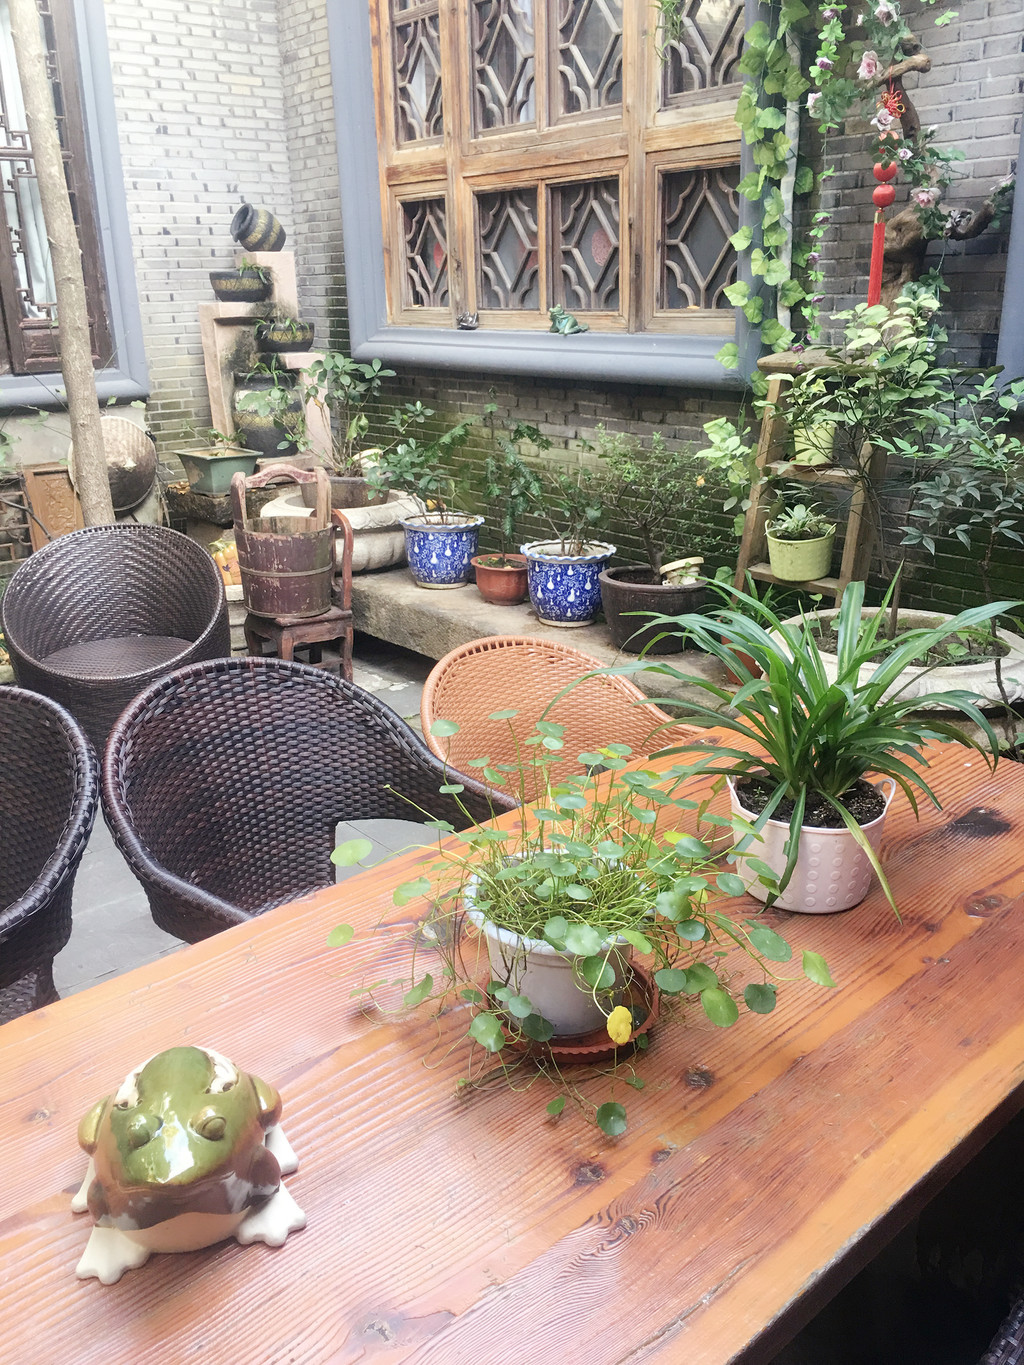 原木长桌,随意的绿植,苏州小院弥漫着慢生活的悠然的调子